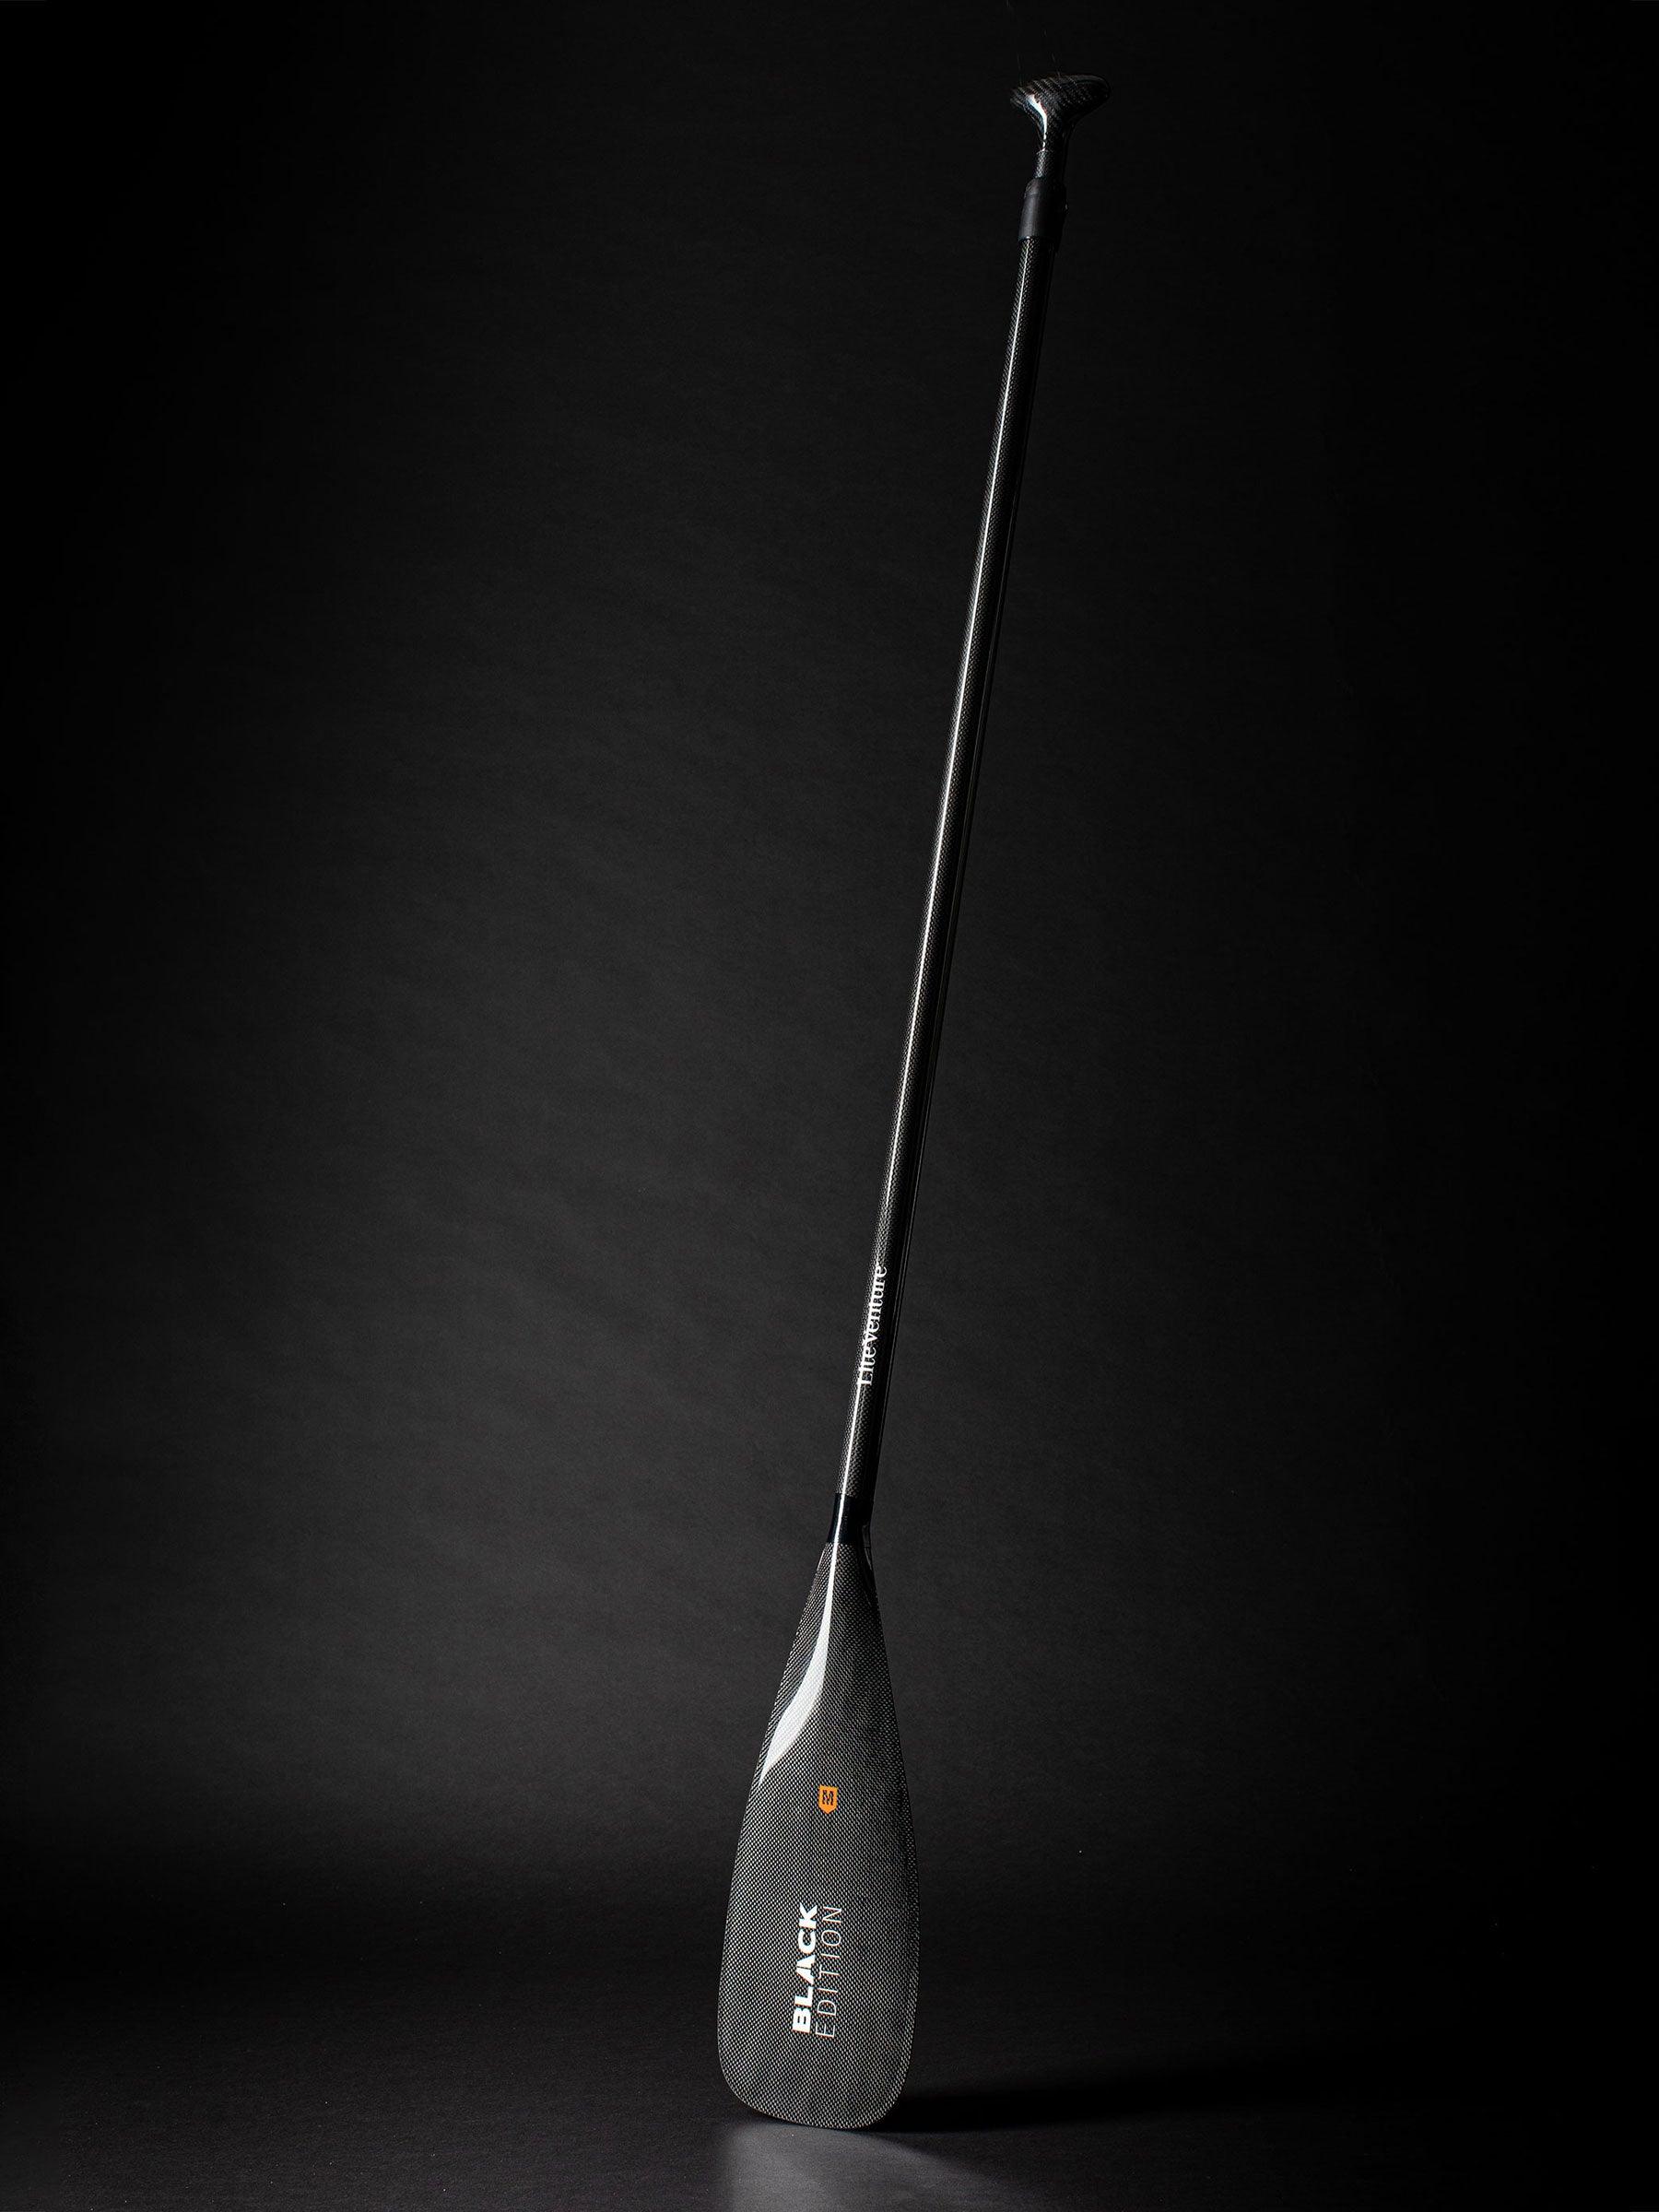 Produktbild von SUP " ULTRA Tour Bundle-11'6" x 31"-+ Carbonpaddel " der Marke Lite Venture für 1270.00 €. Erhältlich online bei Lite Venture ( www.liteventure.de )